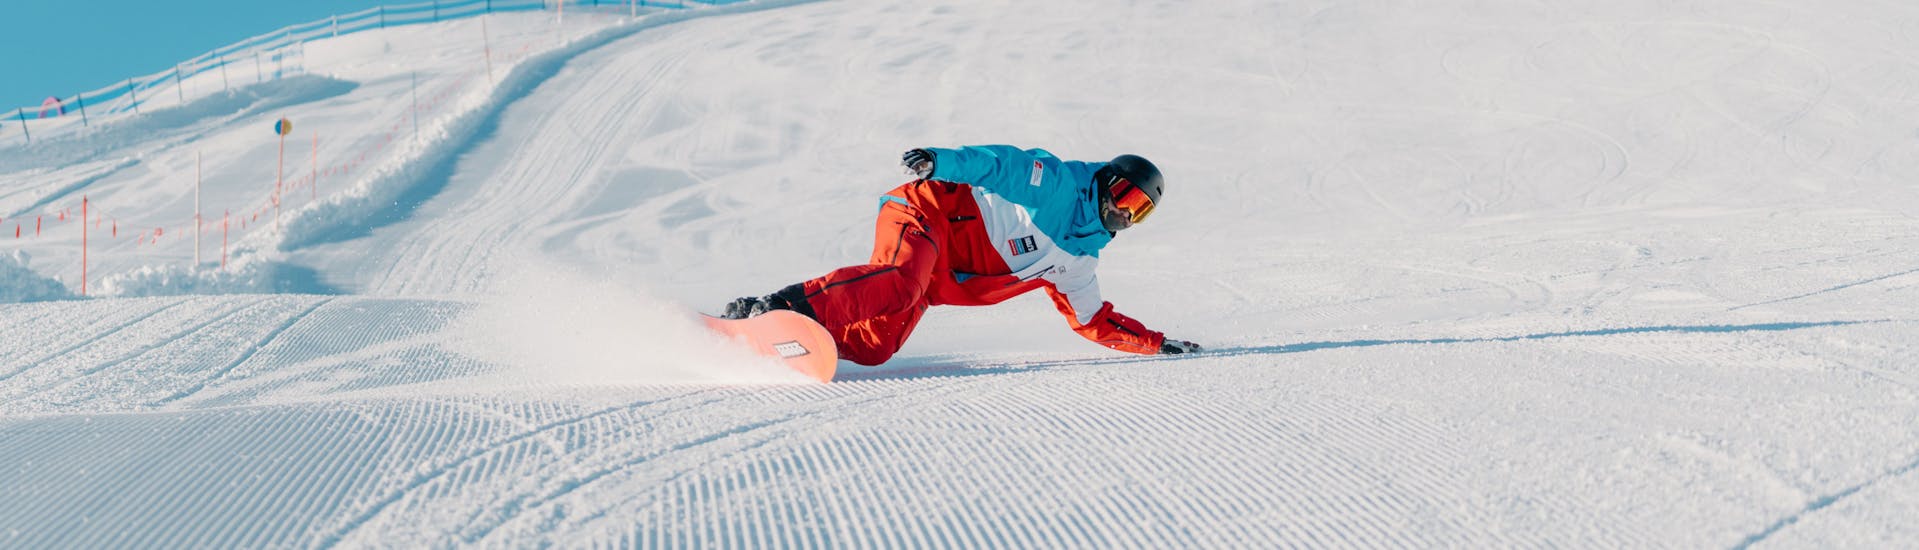 Privé snowboardlessen vanaf 6 jaar voor alle niveaus met Heli's Skischule Saalbach-Hinterglemm.